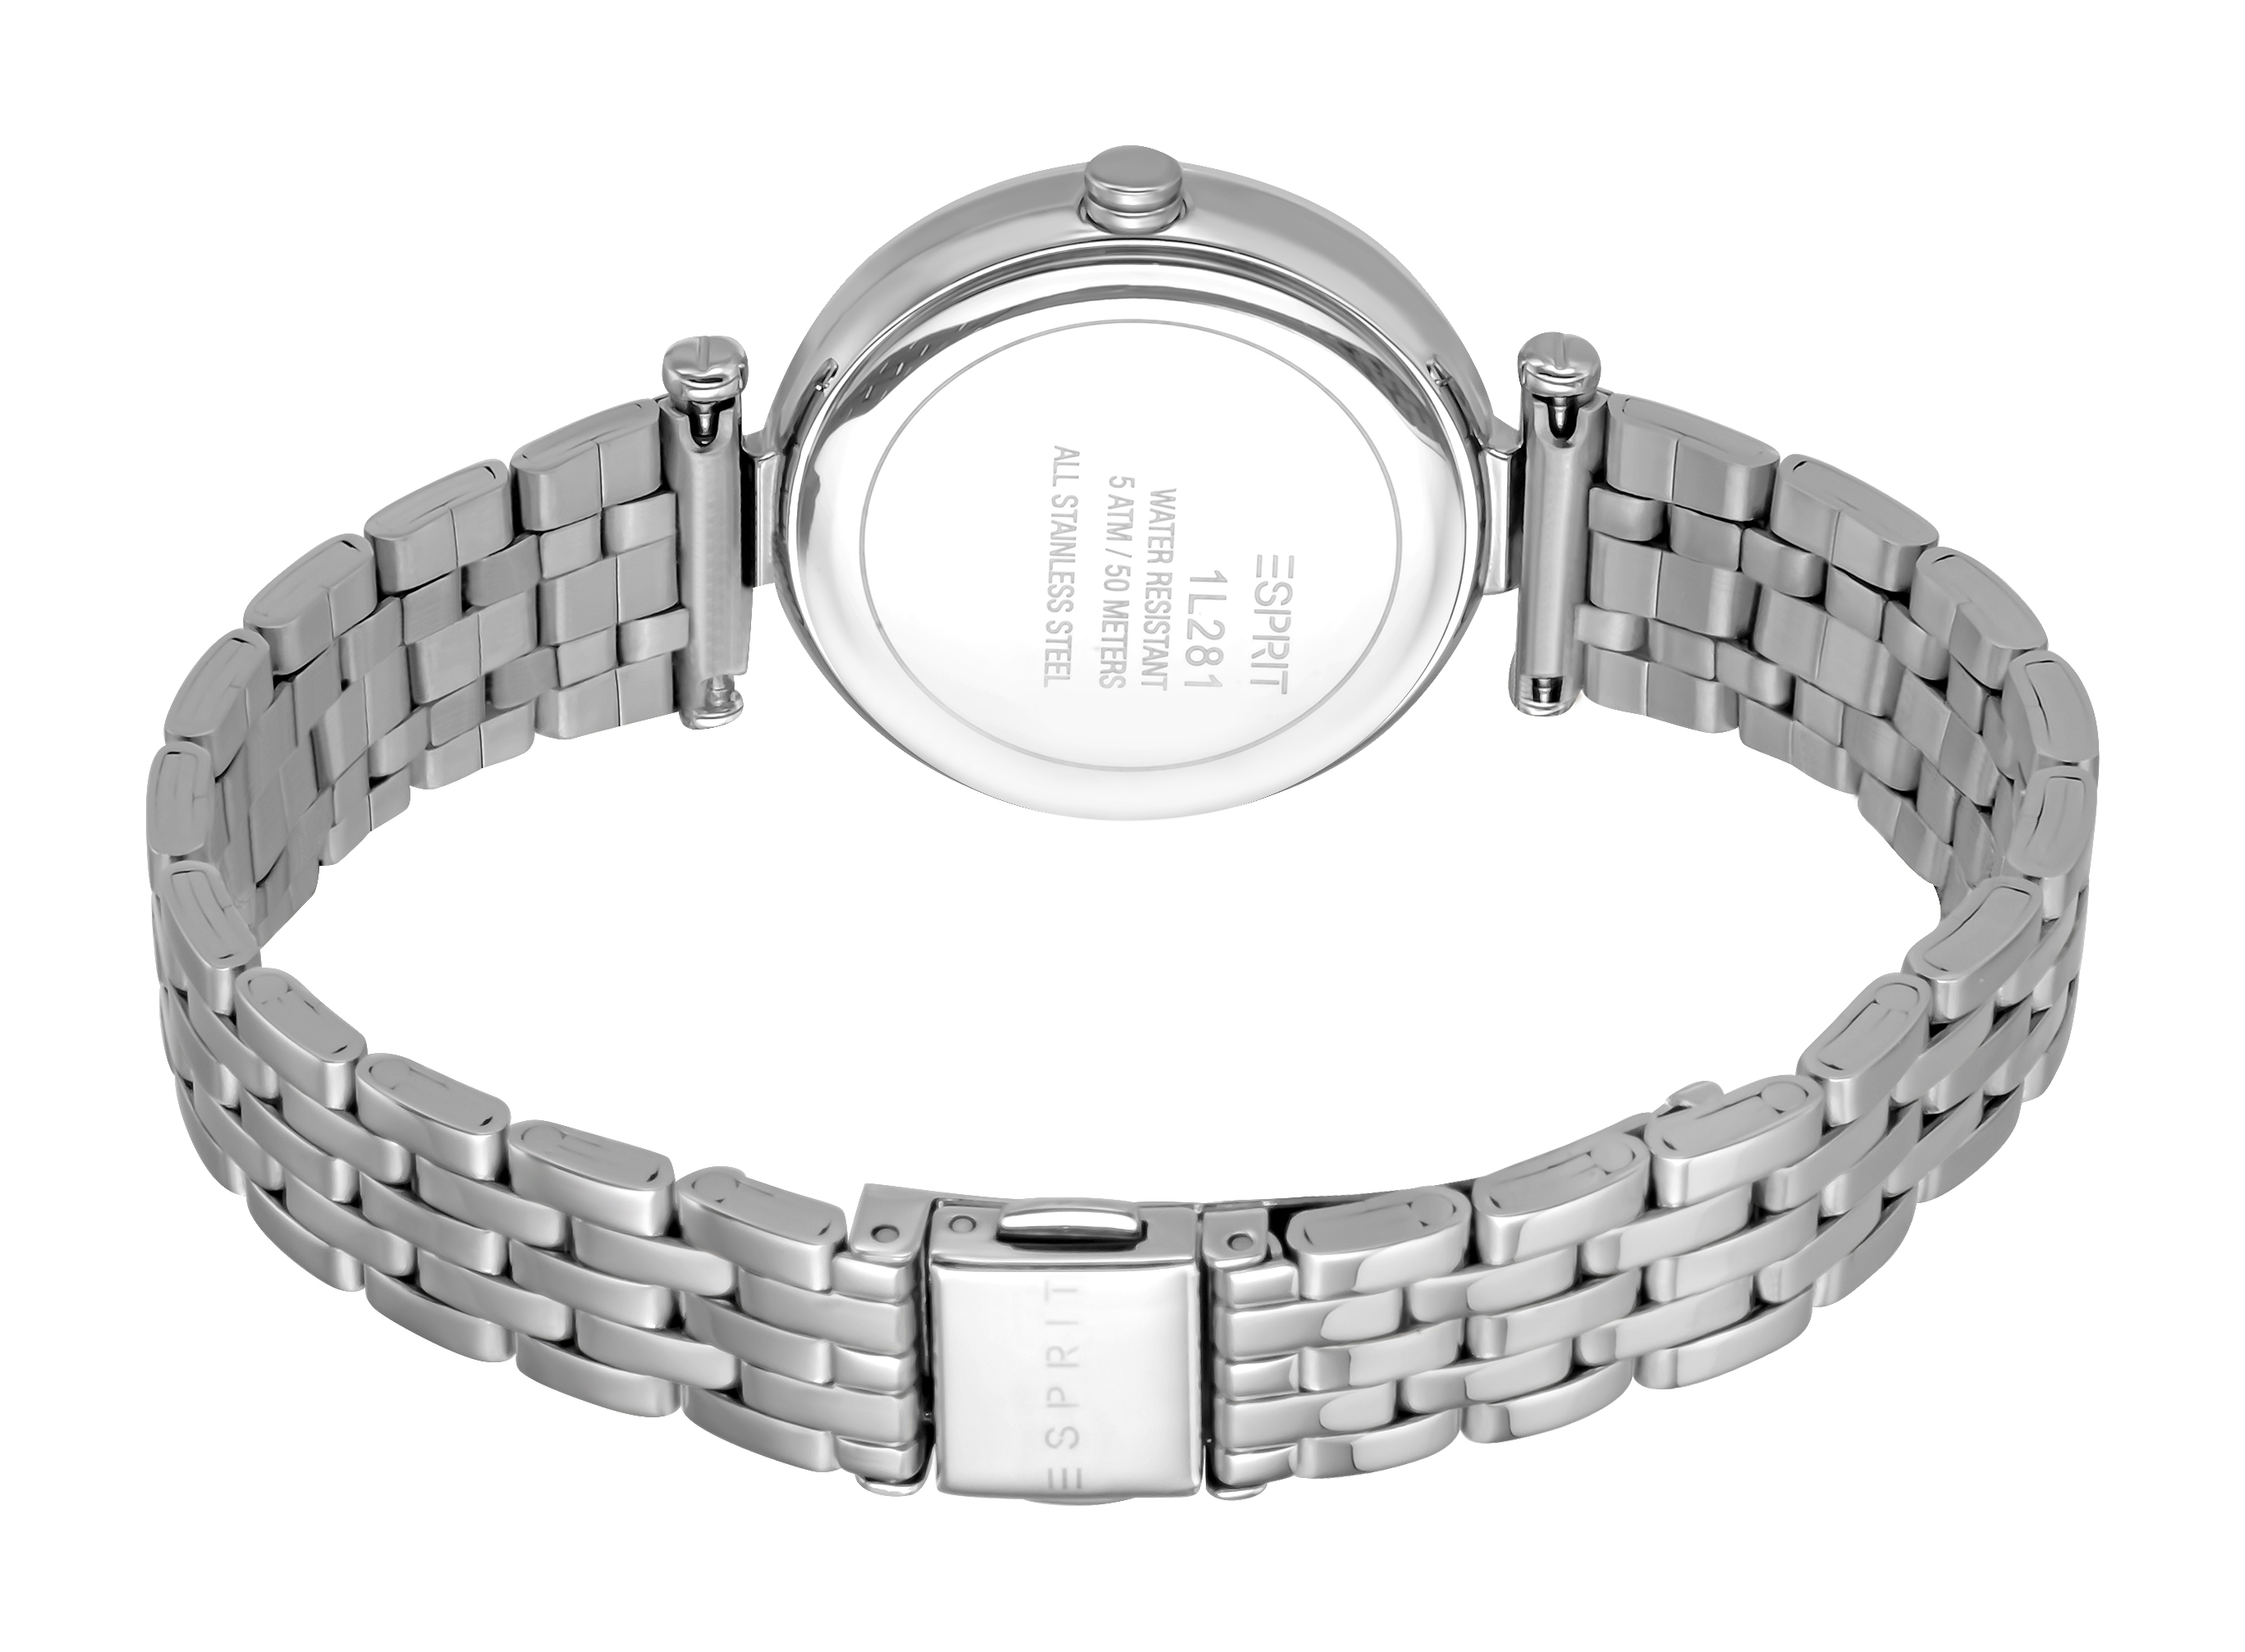 Унисекс часы ESPRIT Esprit ES1L281M1055